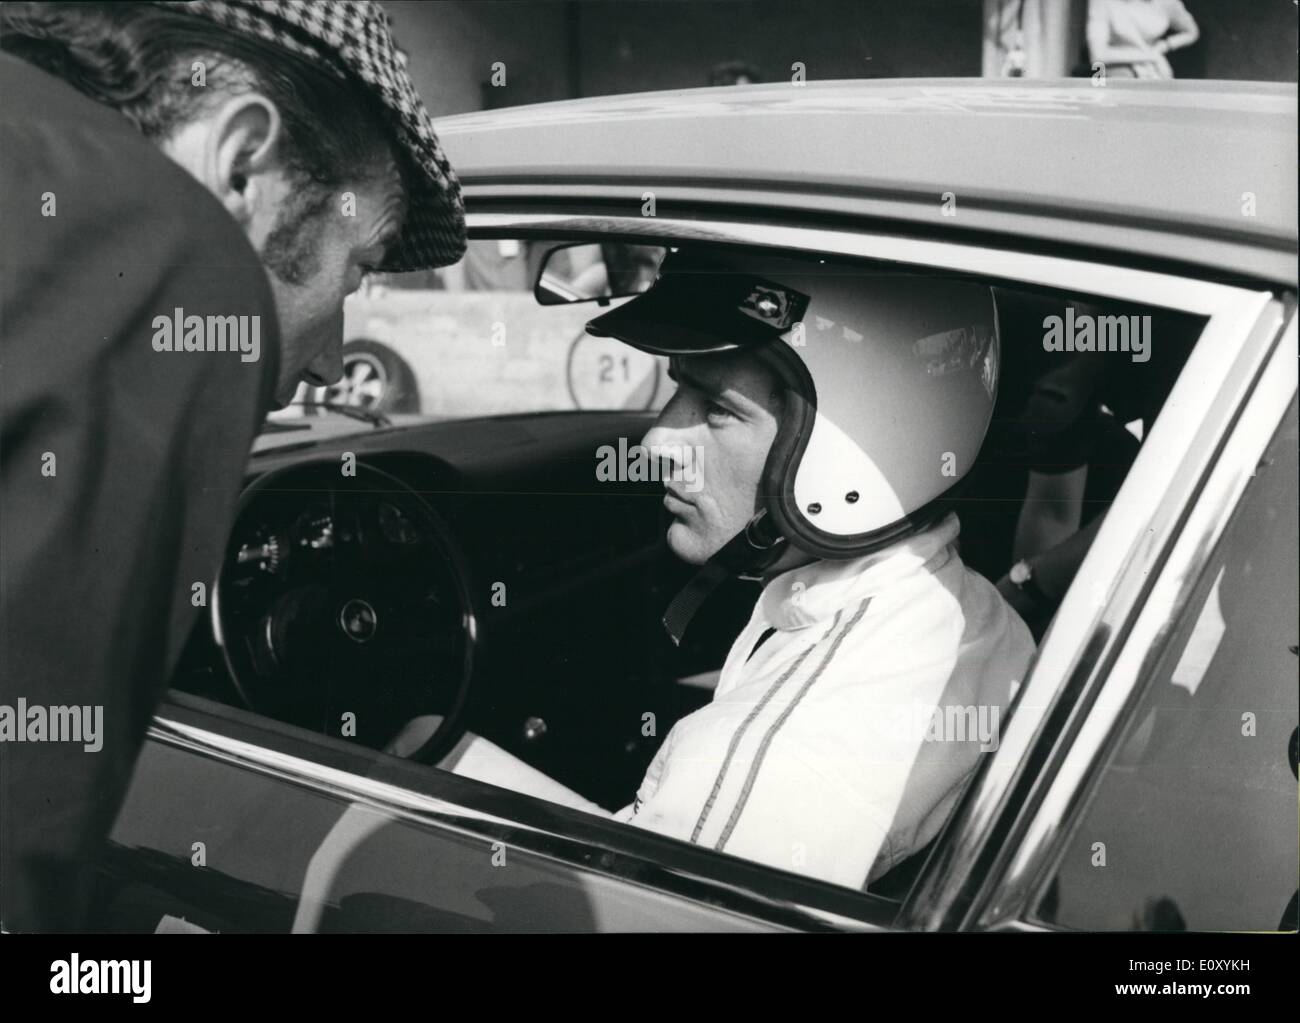 Apr. 04, 1968 - Jean-Claude Killy, famoso sci francese-stella parteciperà a 100 chilometro di gara a Monza il 24 aprile. Le immagini mostrano lui pilotare una Porsche - auto della Porsche -team. Foto Stock